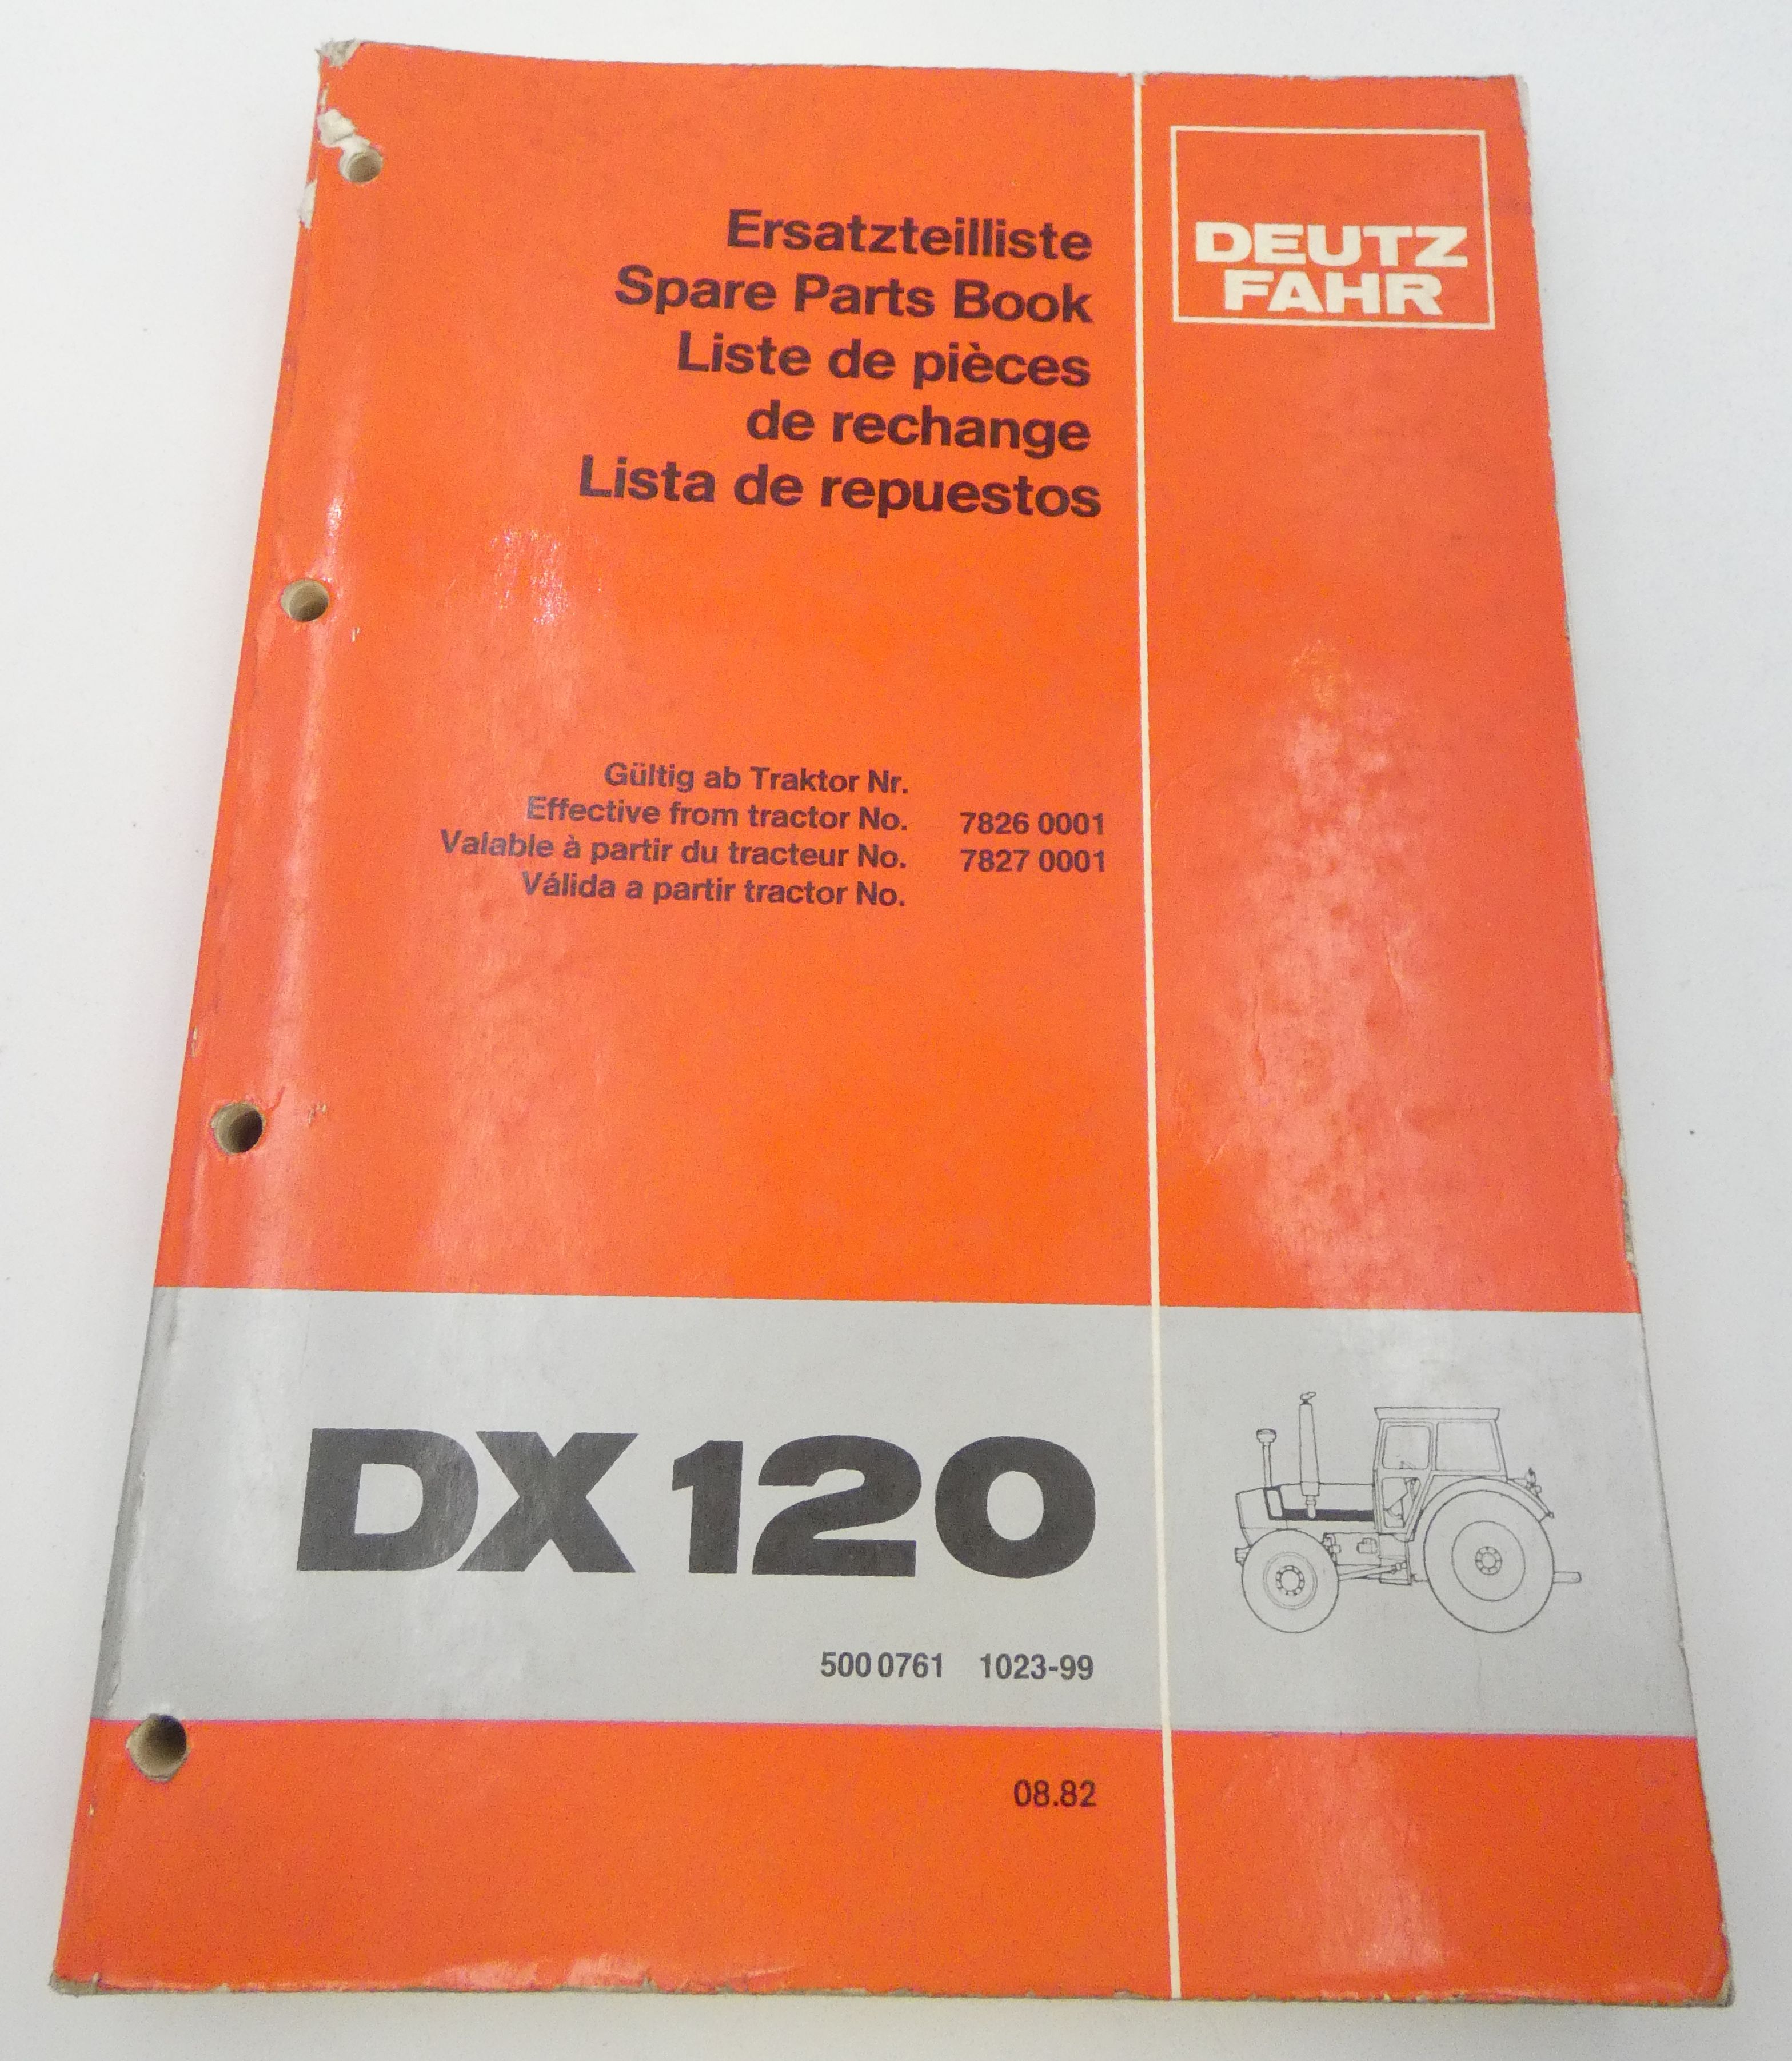 Deutz-Fahr DX120 spare parts book